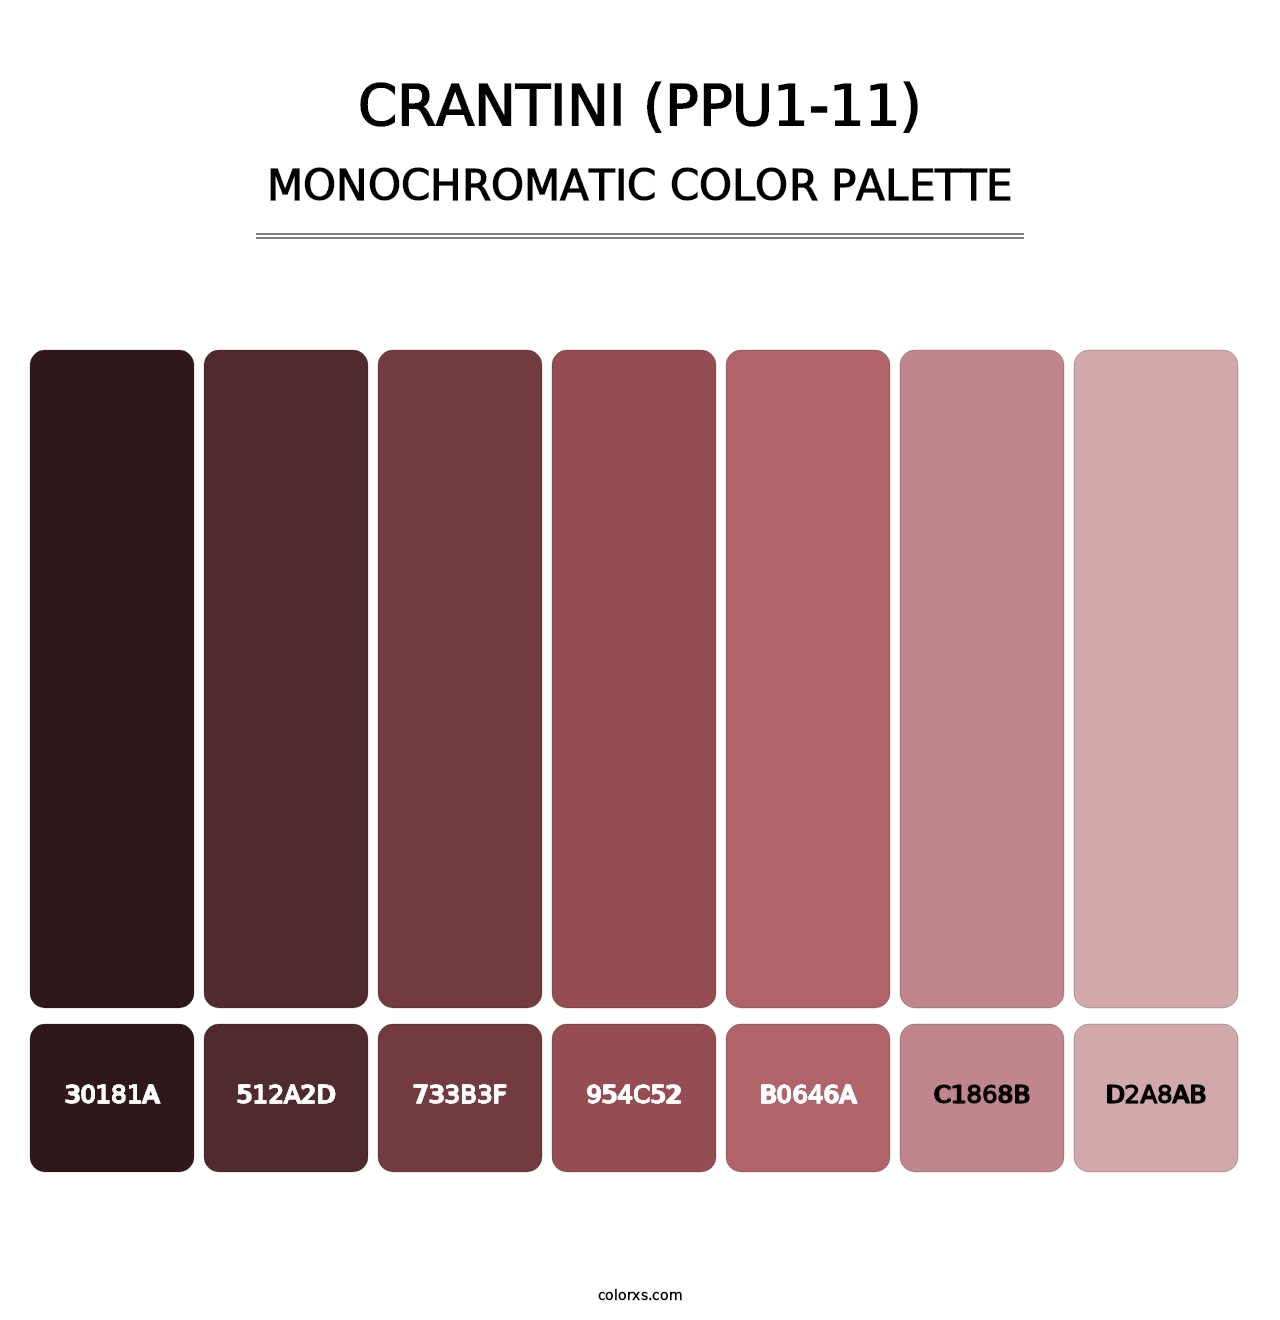 Crantini (PPU1-11) - Monochromatic Color Palette